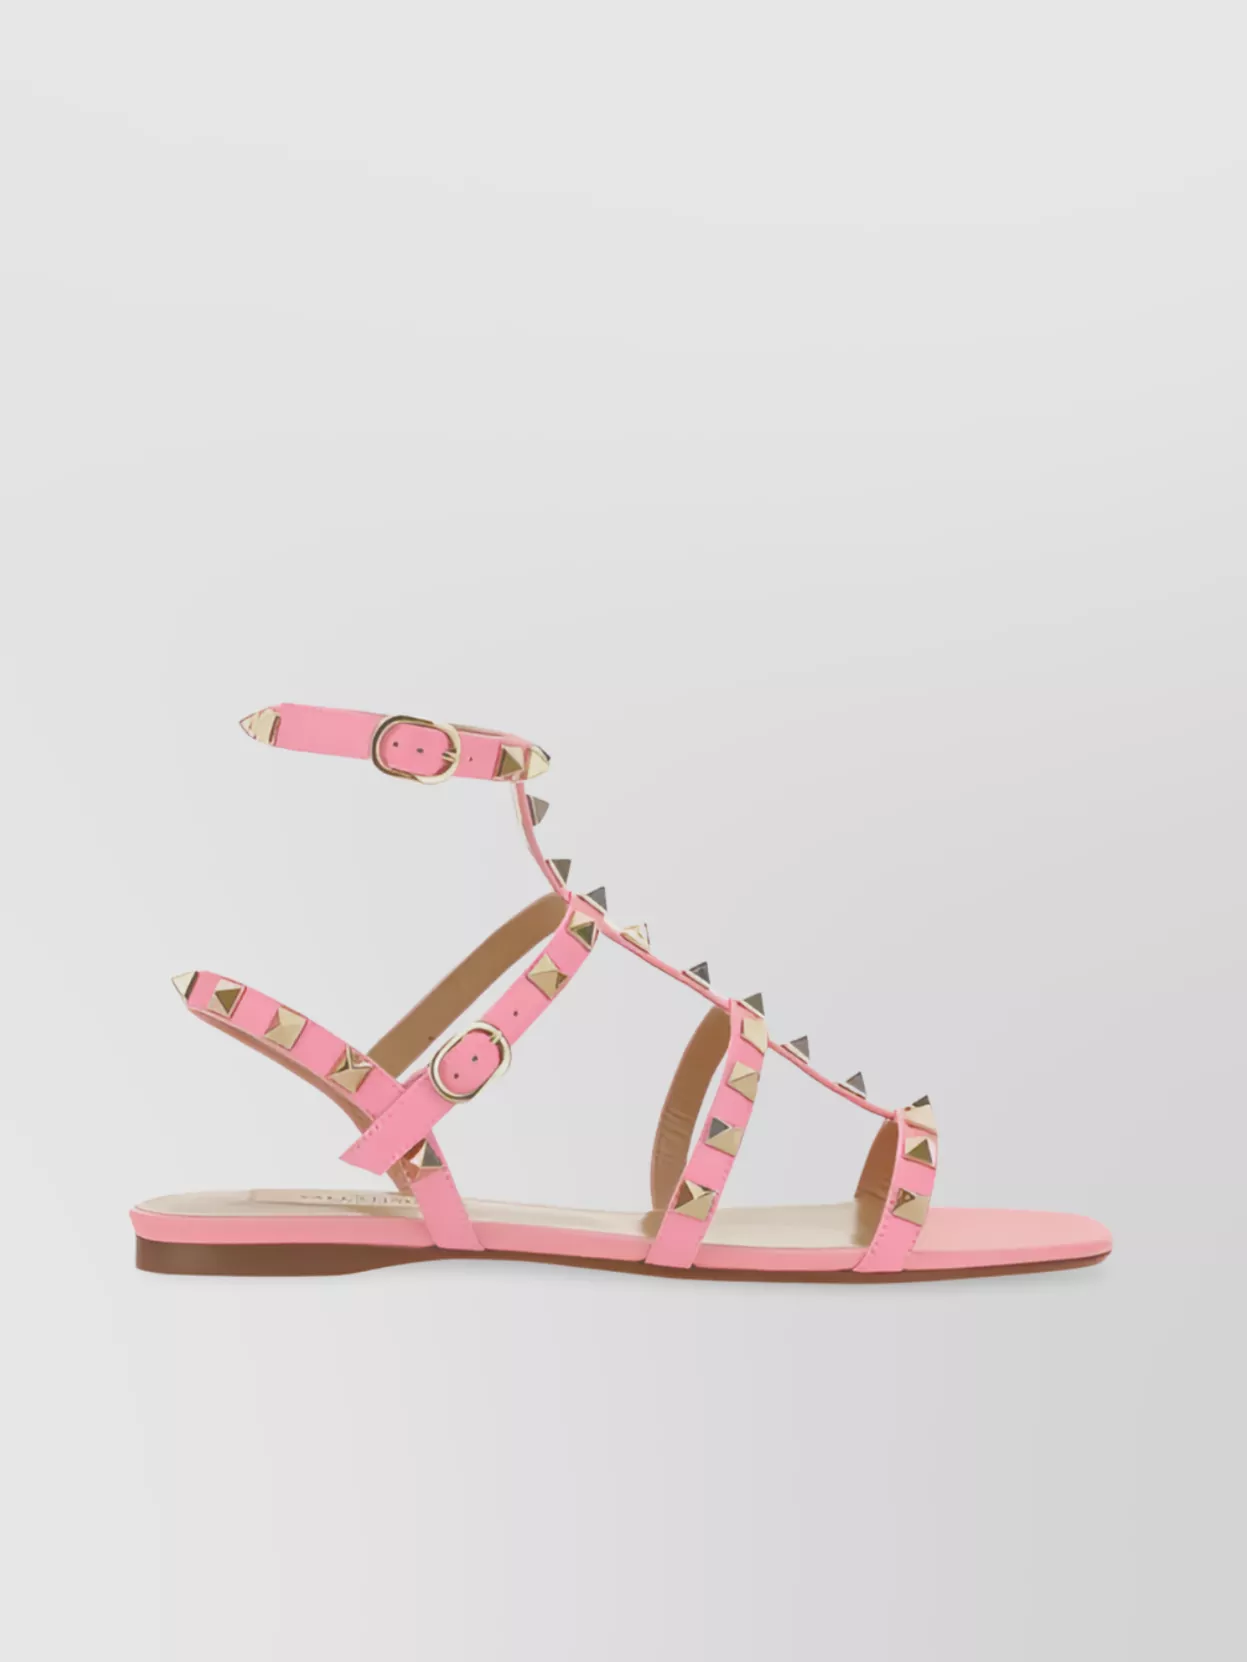 Valentino Garavani Rockstud Leather Sandals In Pink